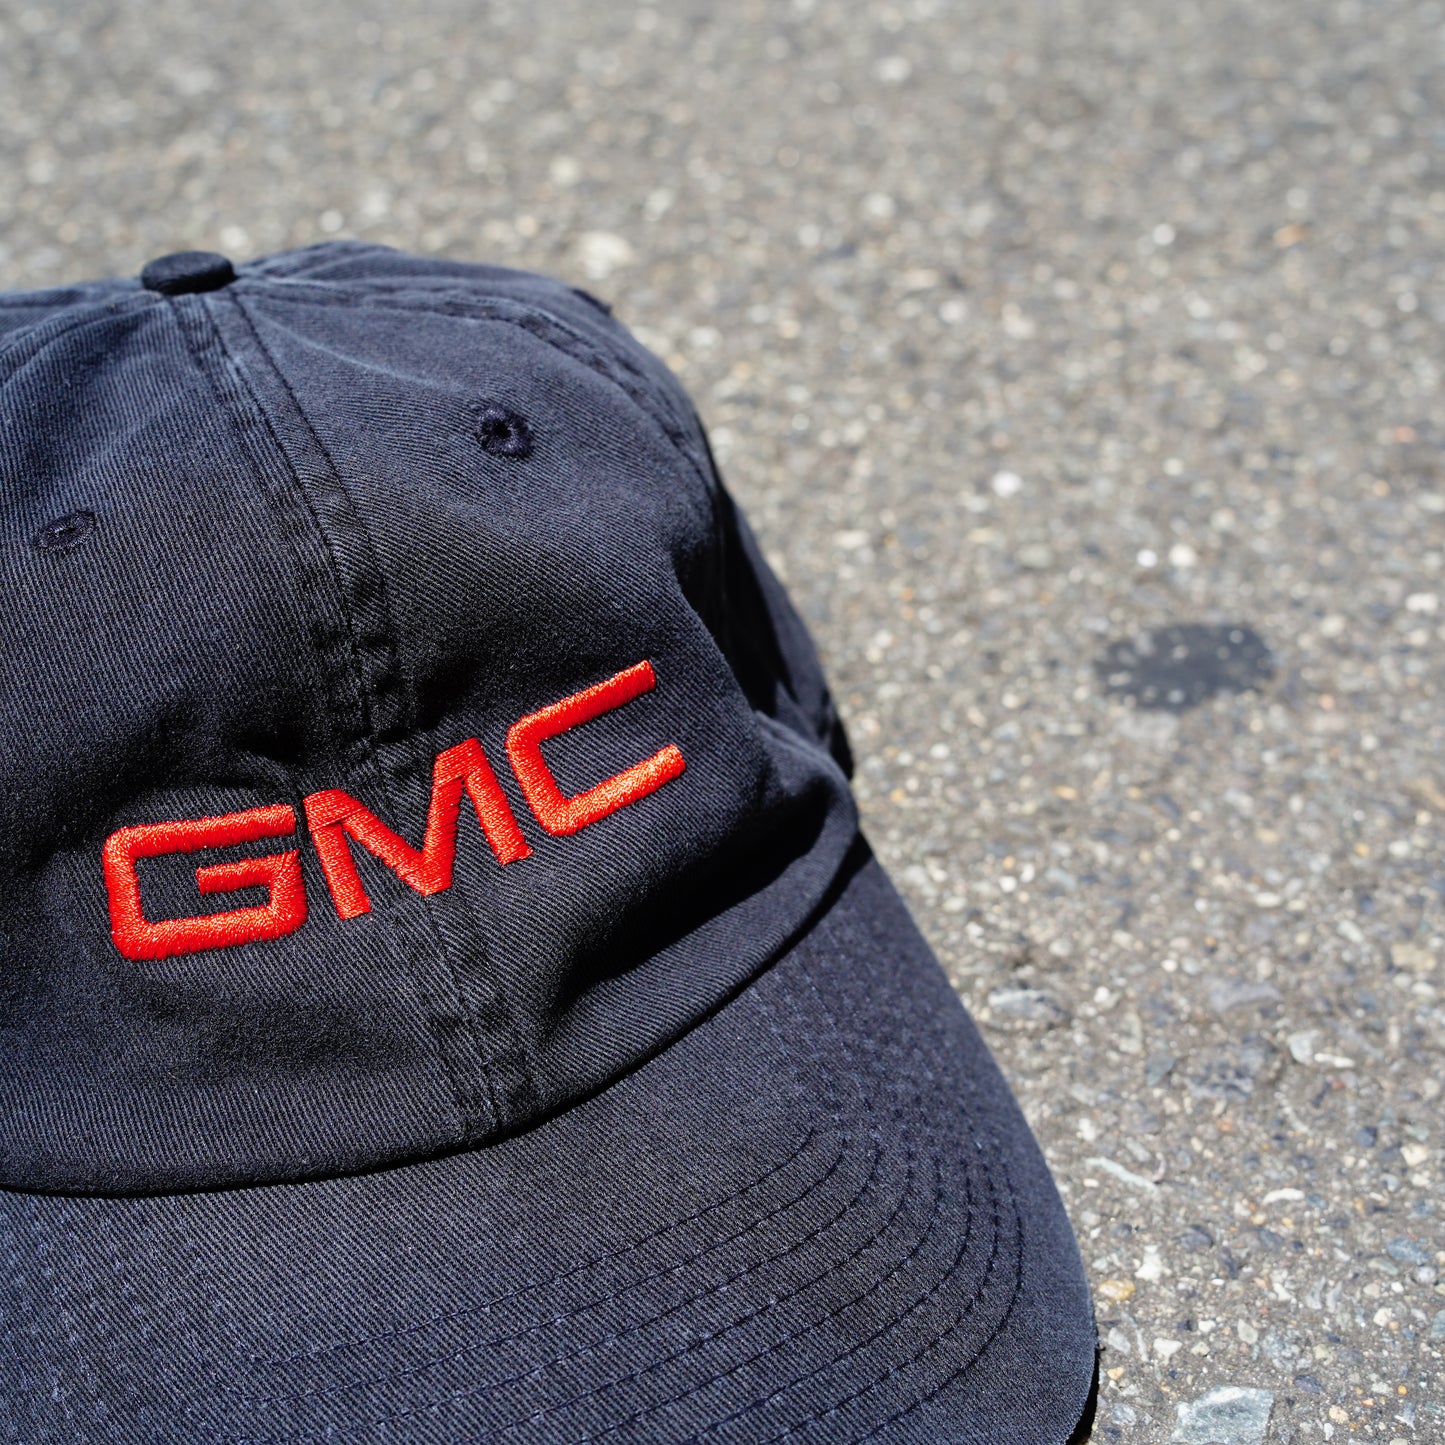 GMC Logo Cap